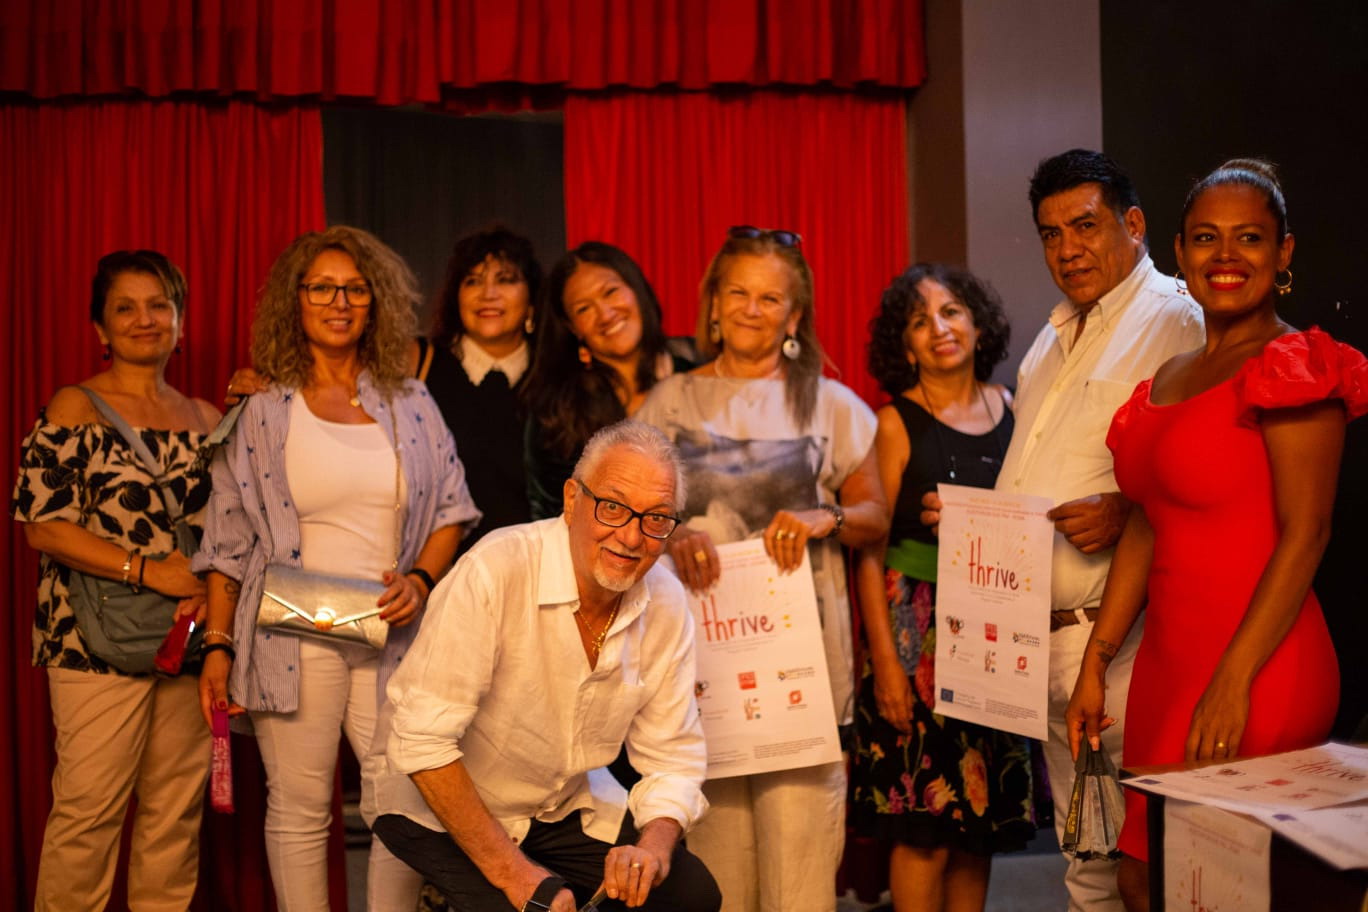 " Cultura folklore integrazione": a Roma presentato il "Progetto Thrive", di formazione per operatori sociali e per le donne migranti